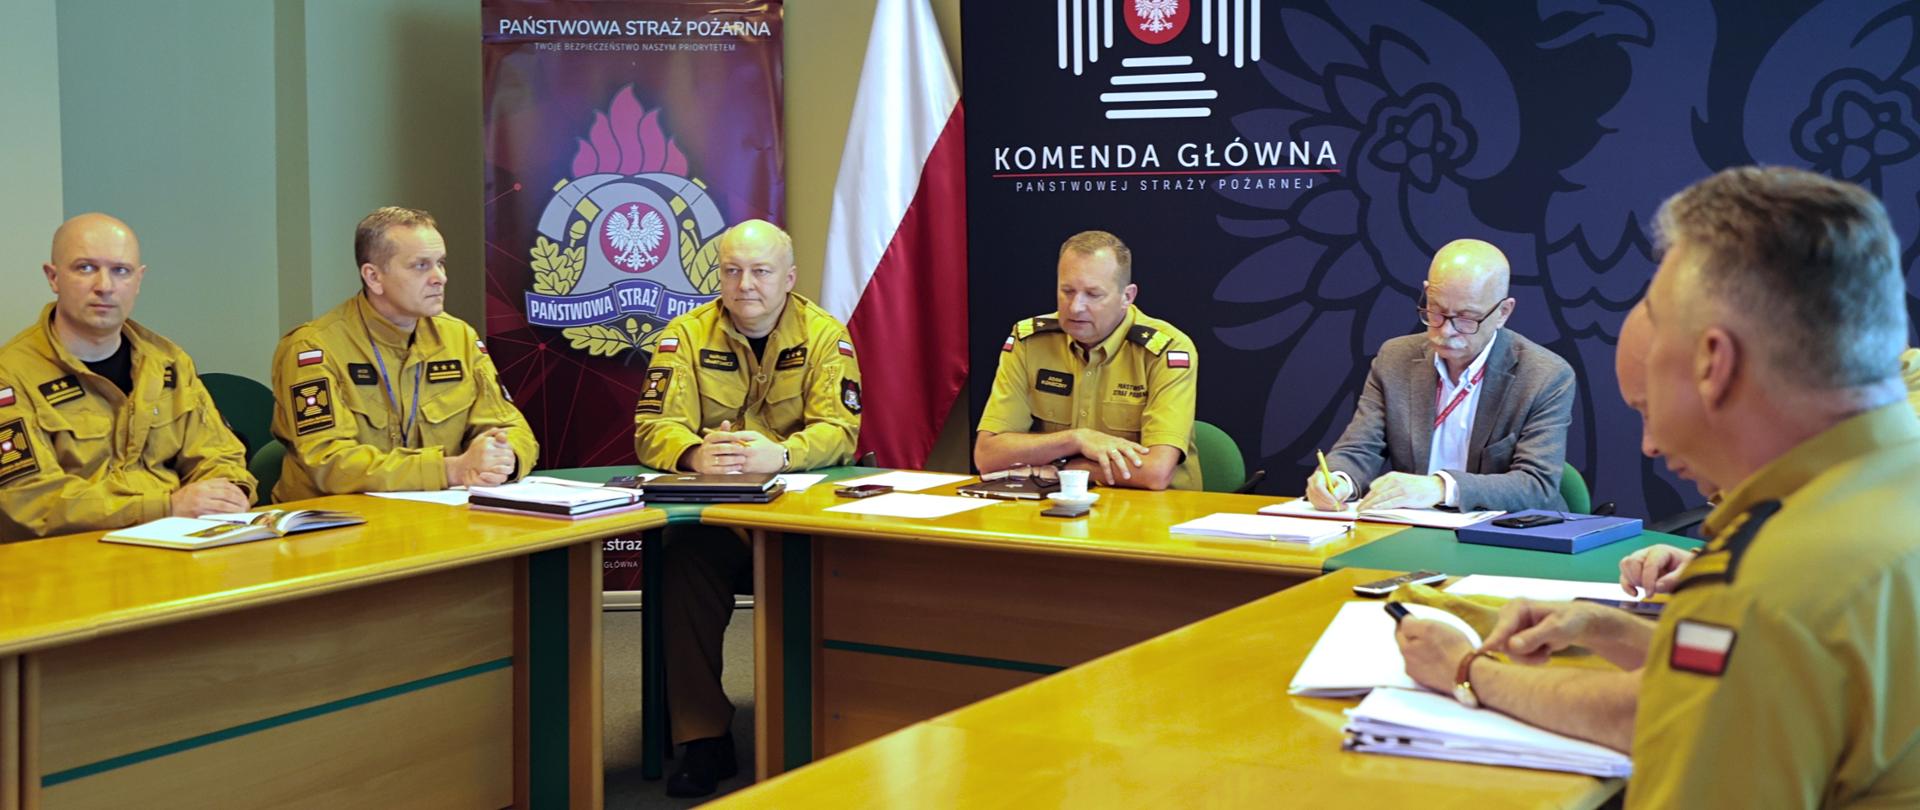 Zastępca komendanta głównego i sześciu oficerów z KG PSP oraz mężczyzna w ubraniu cywilnym siedzący przy stole. 